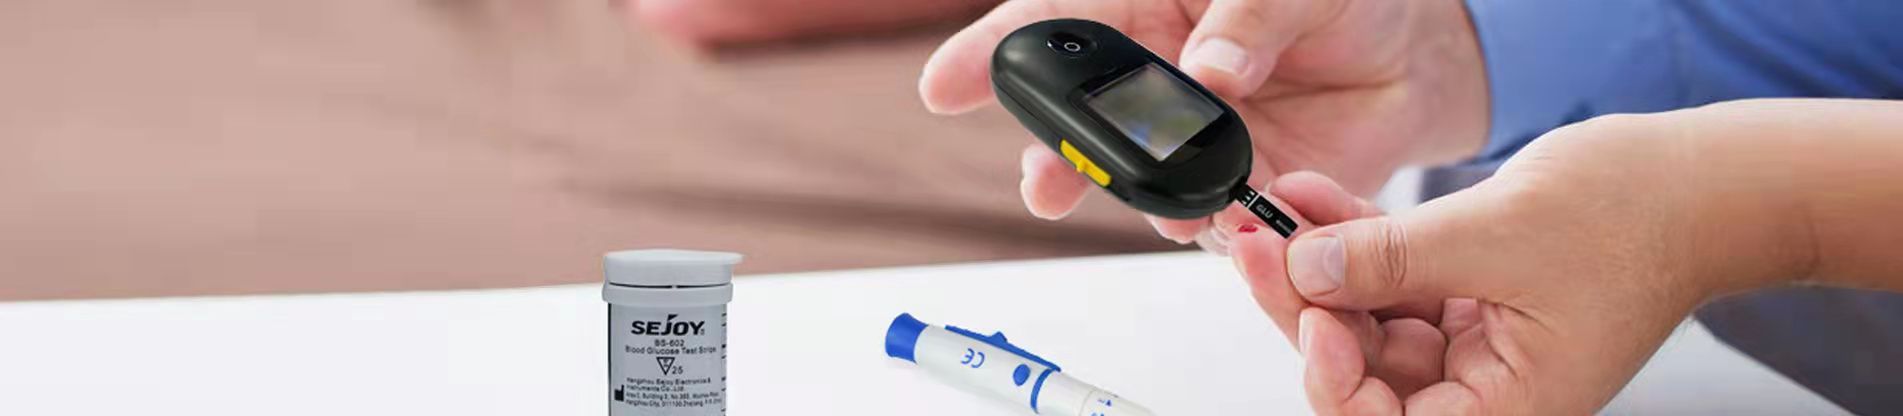 Systém monitorování hladiny glukózy v krvi